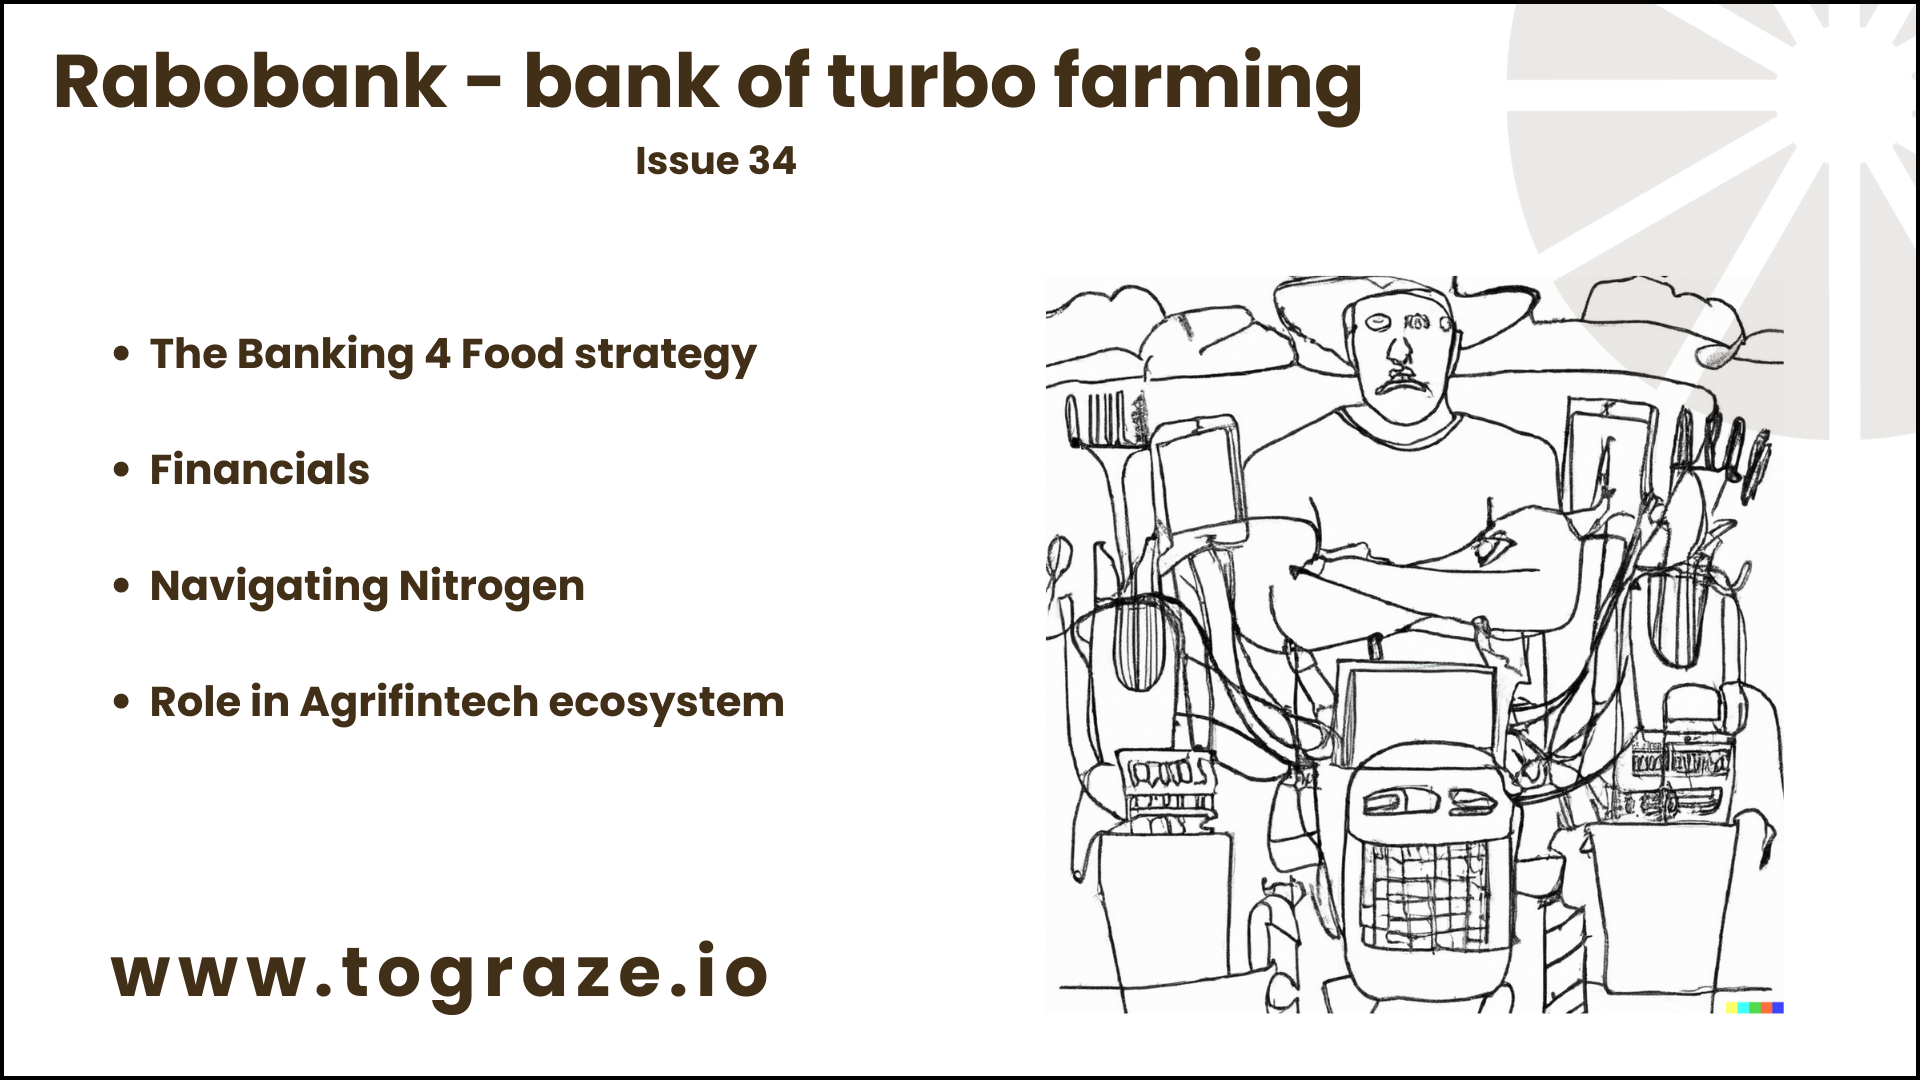 Rabobank - the bank of turbo farming